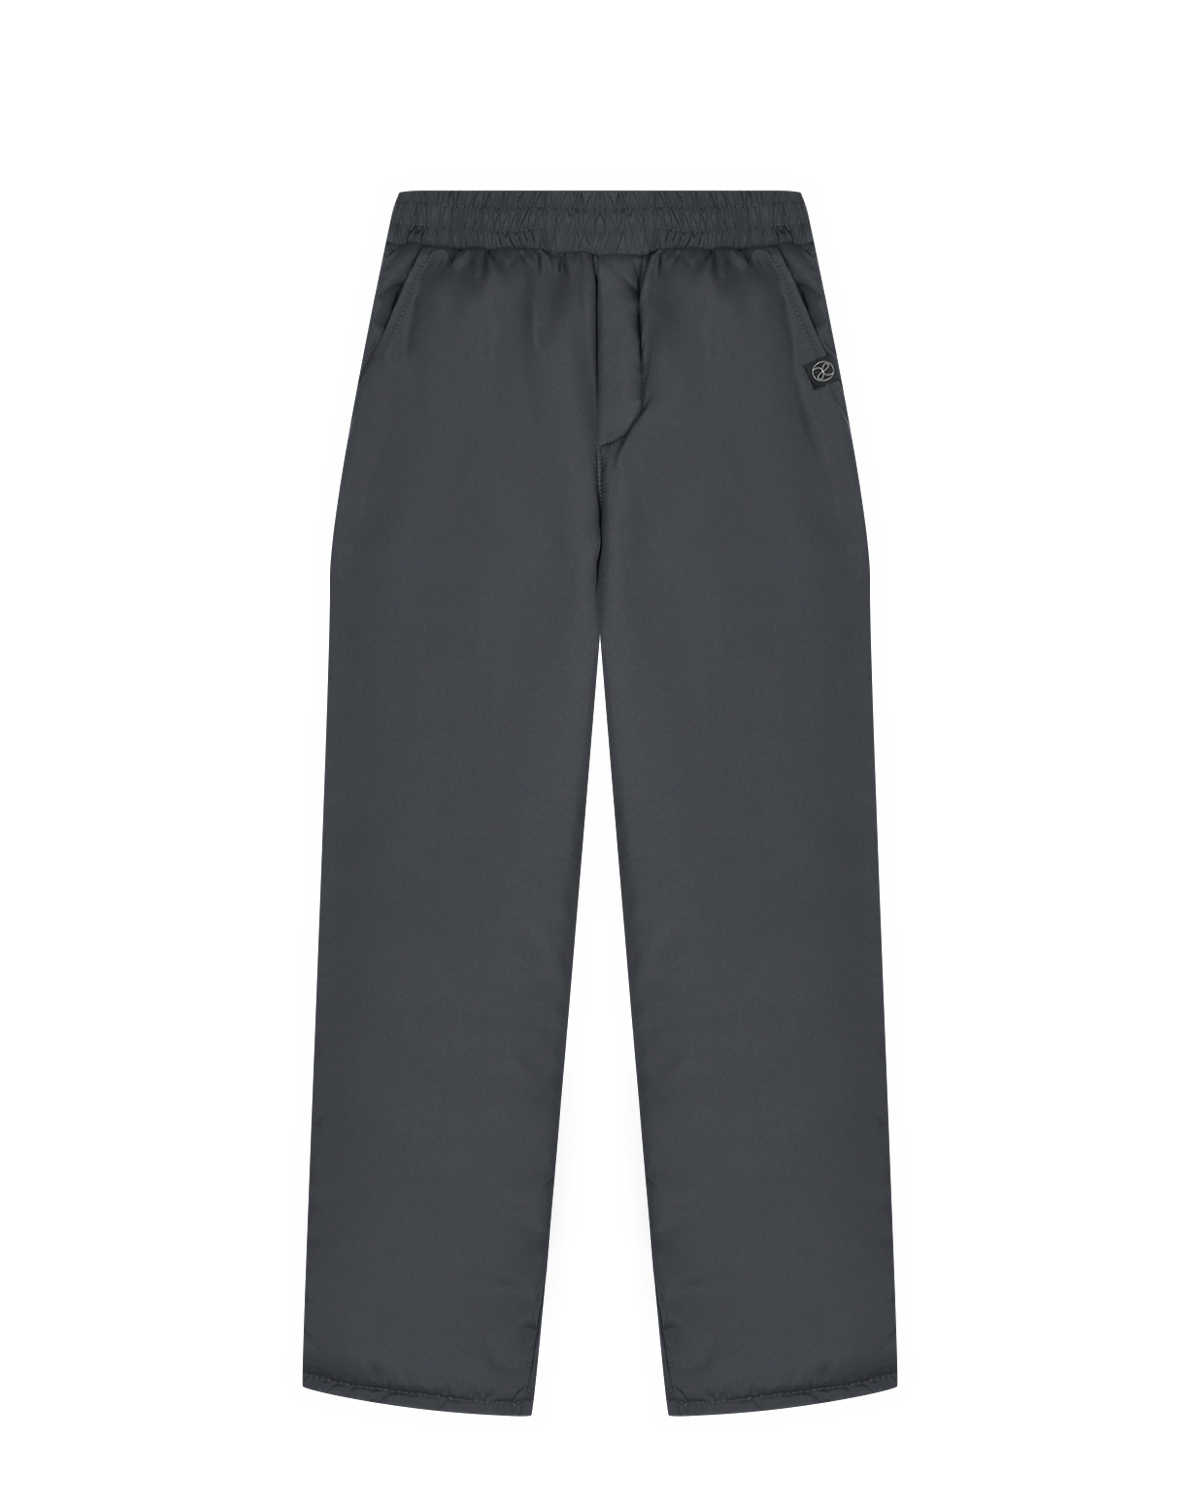 Утепленные темно-серые брюки Dan Maralex детские, размер 128, цвет серый